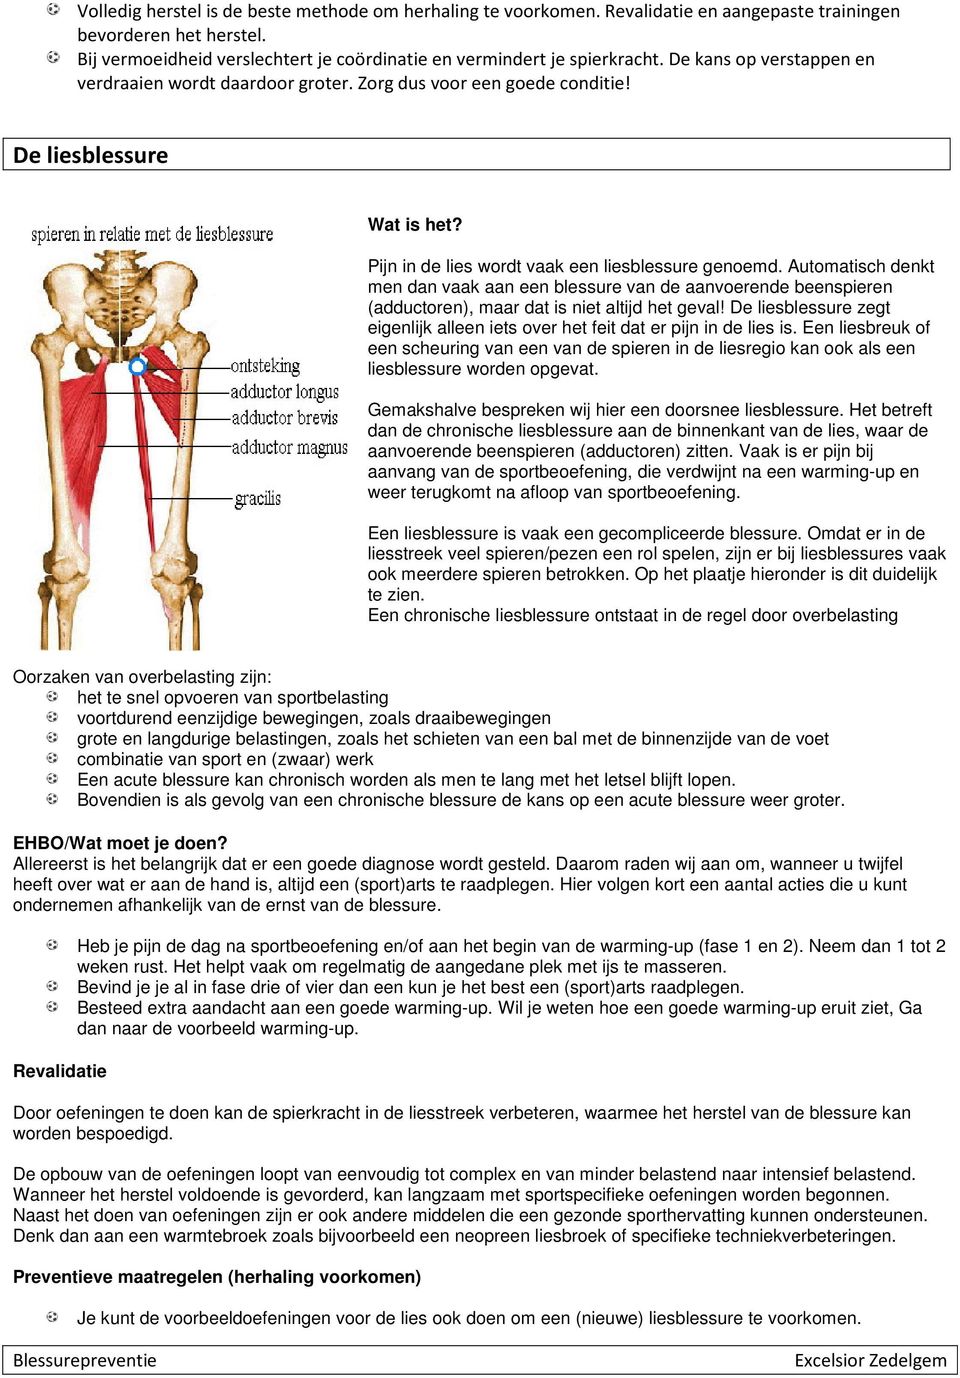 Automatisch denkt men dan vaak aan een blessure van de aanvoerende beenspieren (adductoren), maar dat is niet altijd het geval!